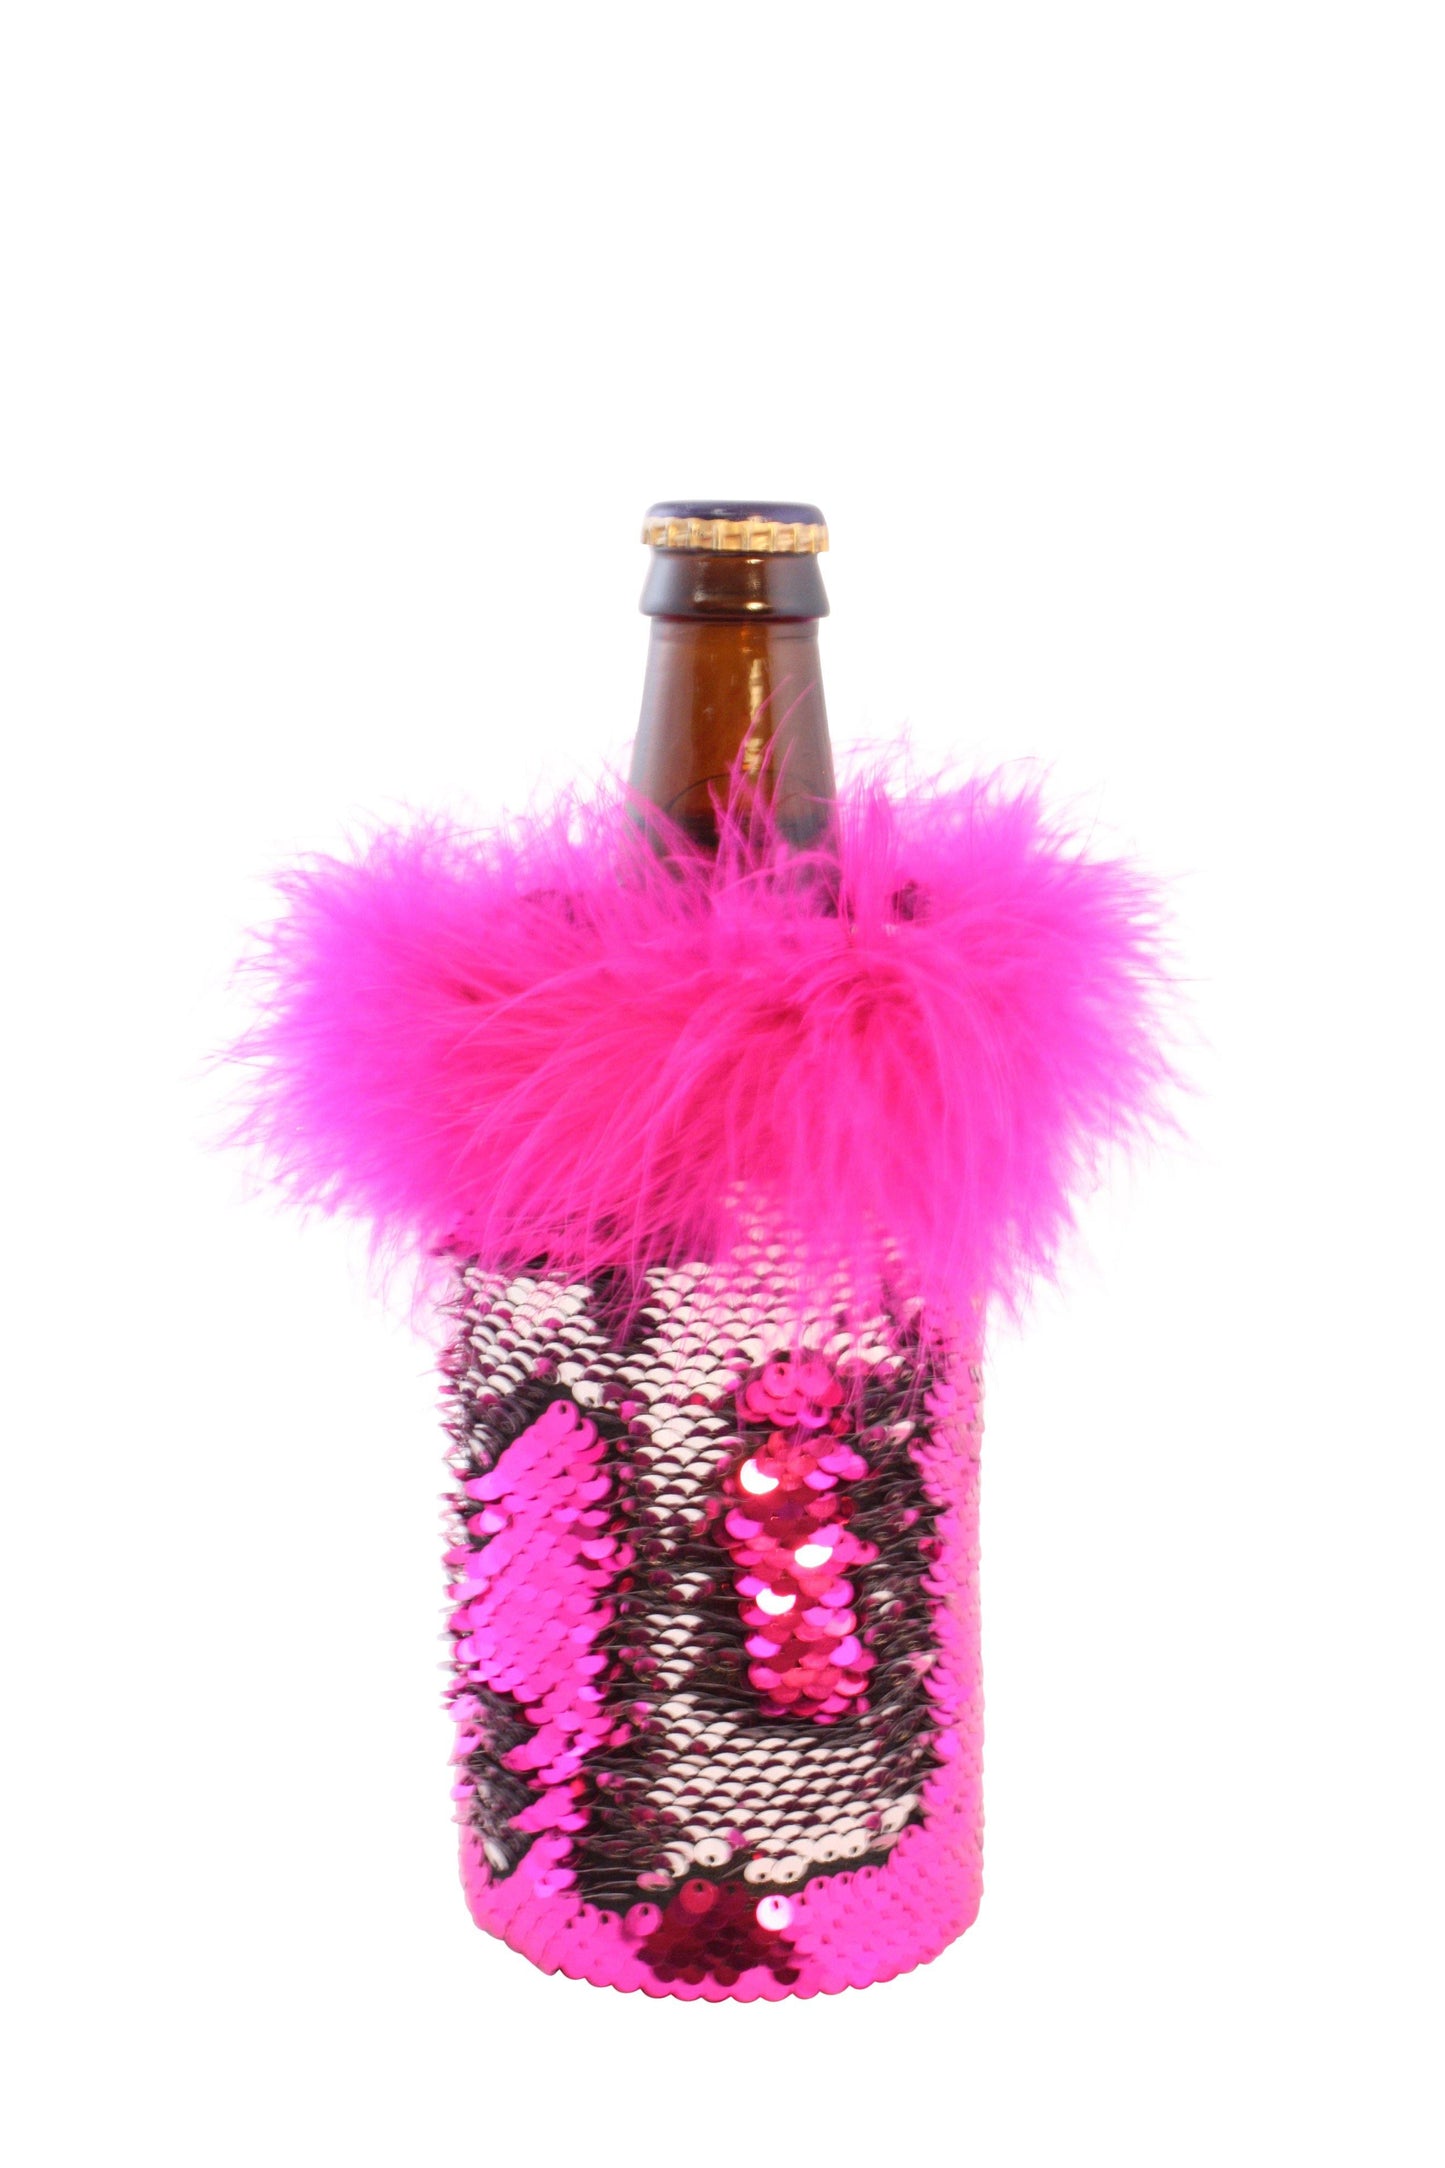 Sequin Beer Cozy - Hot Pink and Silver Reversible Sequin Koozie